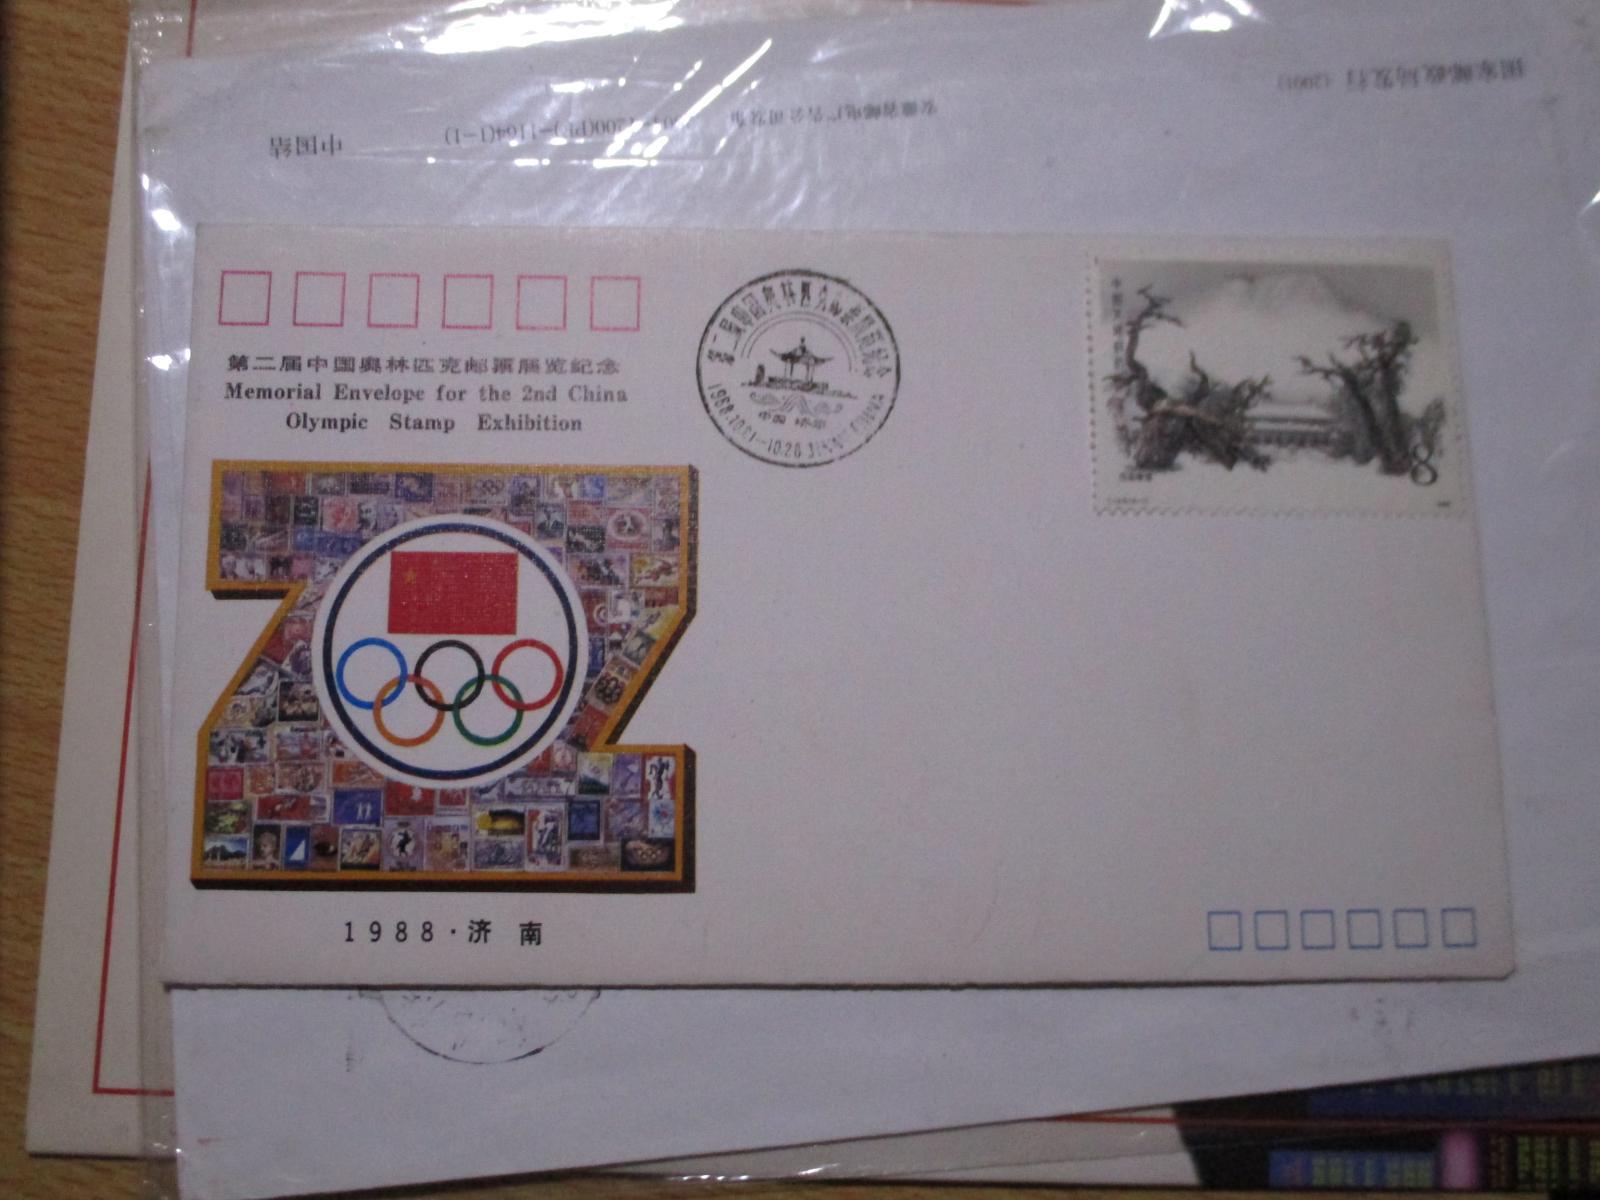 1988年；第二届中国奥林匹克邮票展览纪念封.SD.JF-17